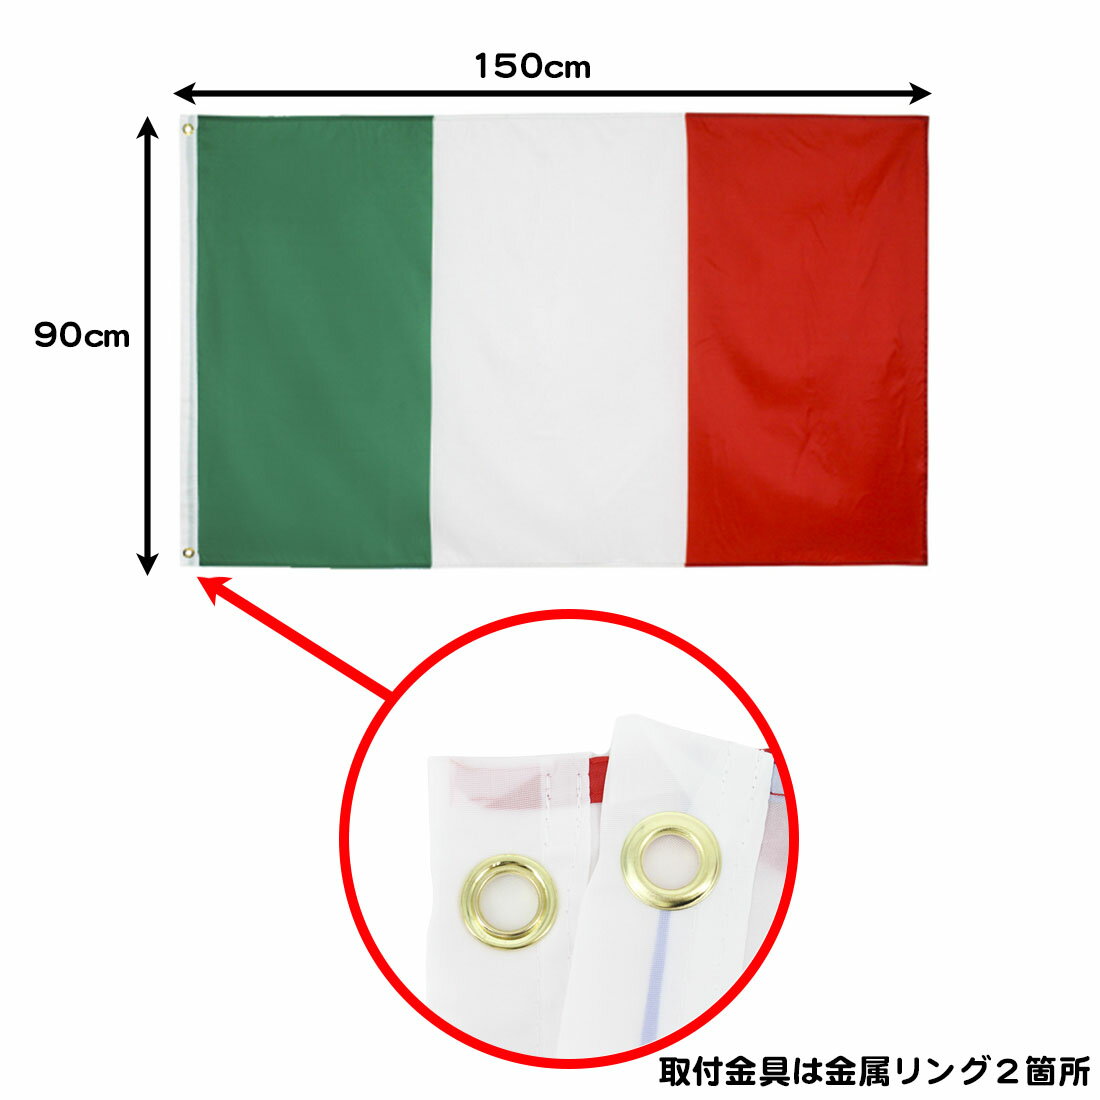 日本 国旗 リング付き 日の丸 特大サイズ 150cm×90 日本代表サッカー応援 インテリア ポール 送料無料 3